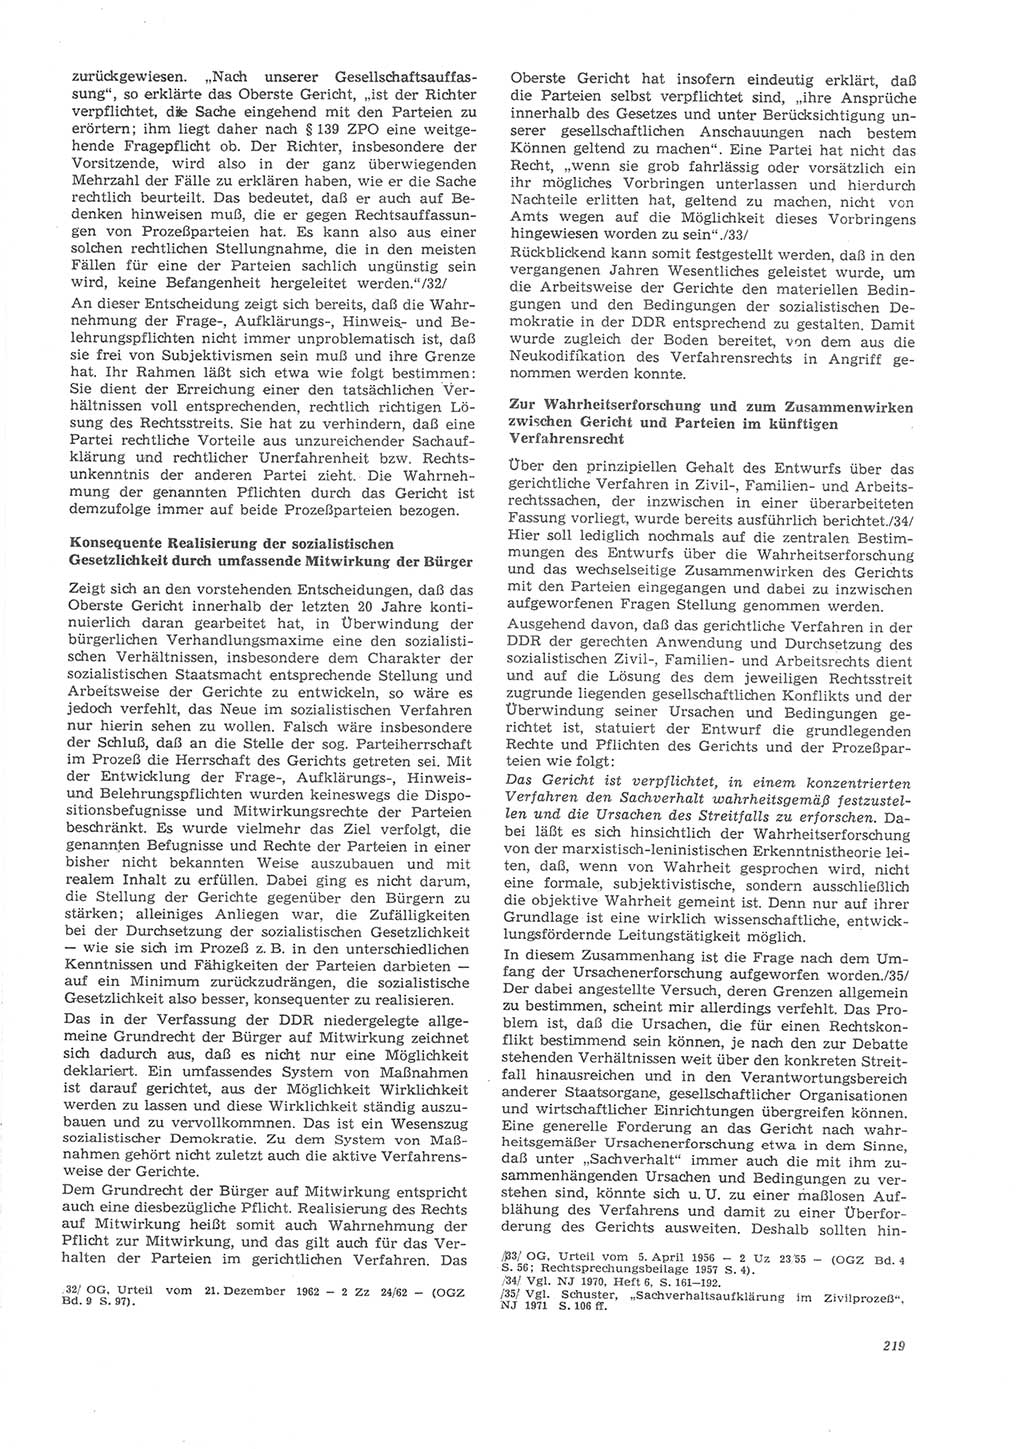 Neue Justiz (NJ), Zeitschrift für Recht und Rechtswissenschaft [Deutsche Demokratische Republik (DDR)], 26. Jahrgang 1972, Seite 219 (NJ DDR 1972, S. 219)